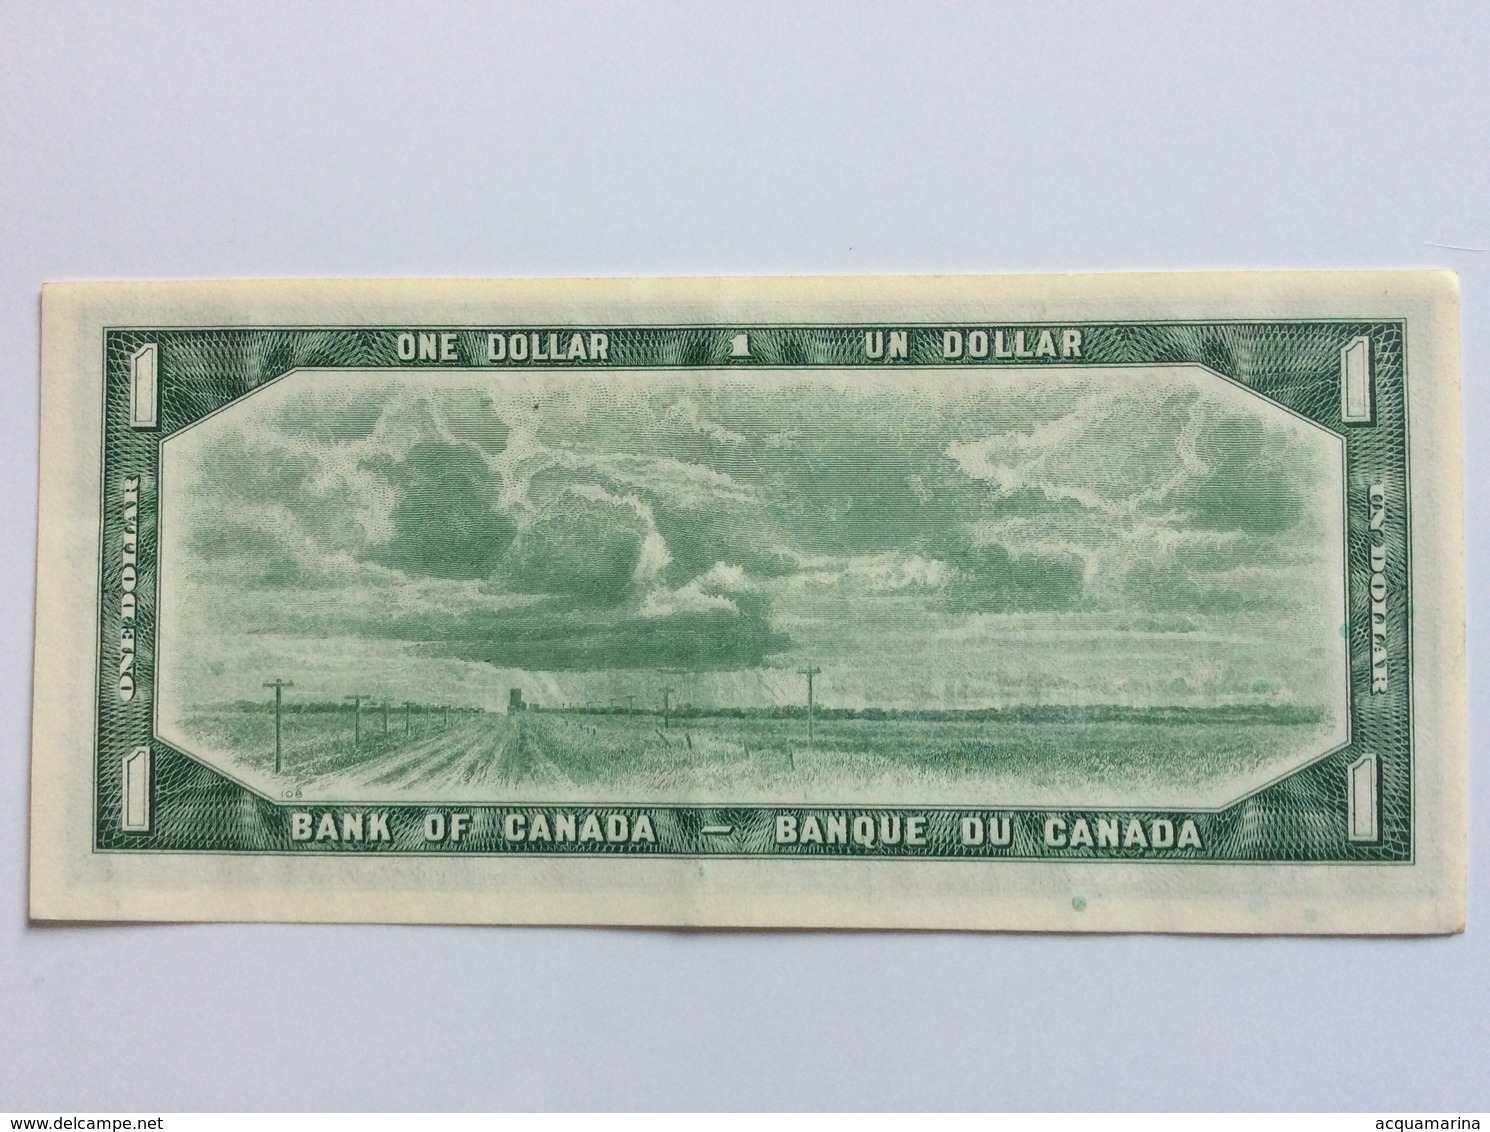 CANADA 1 DOLLAR 1954 EF - Canada